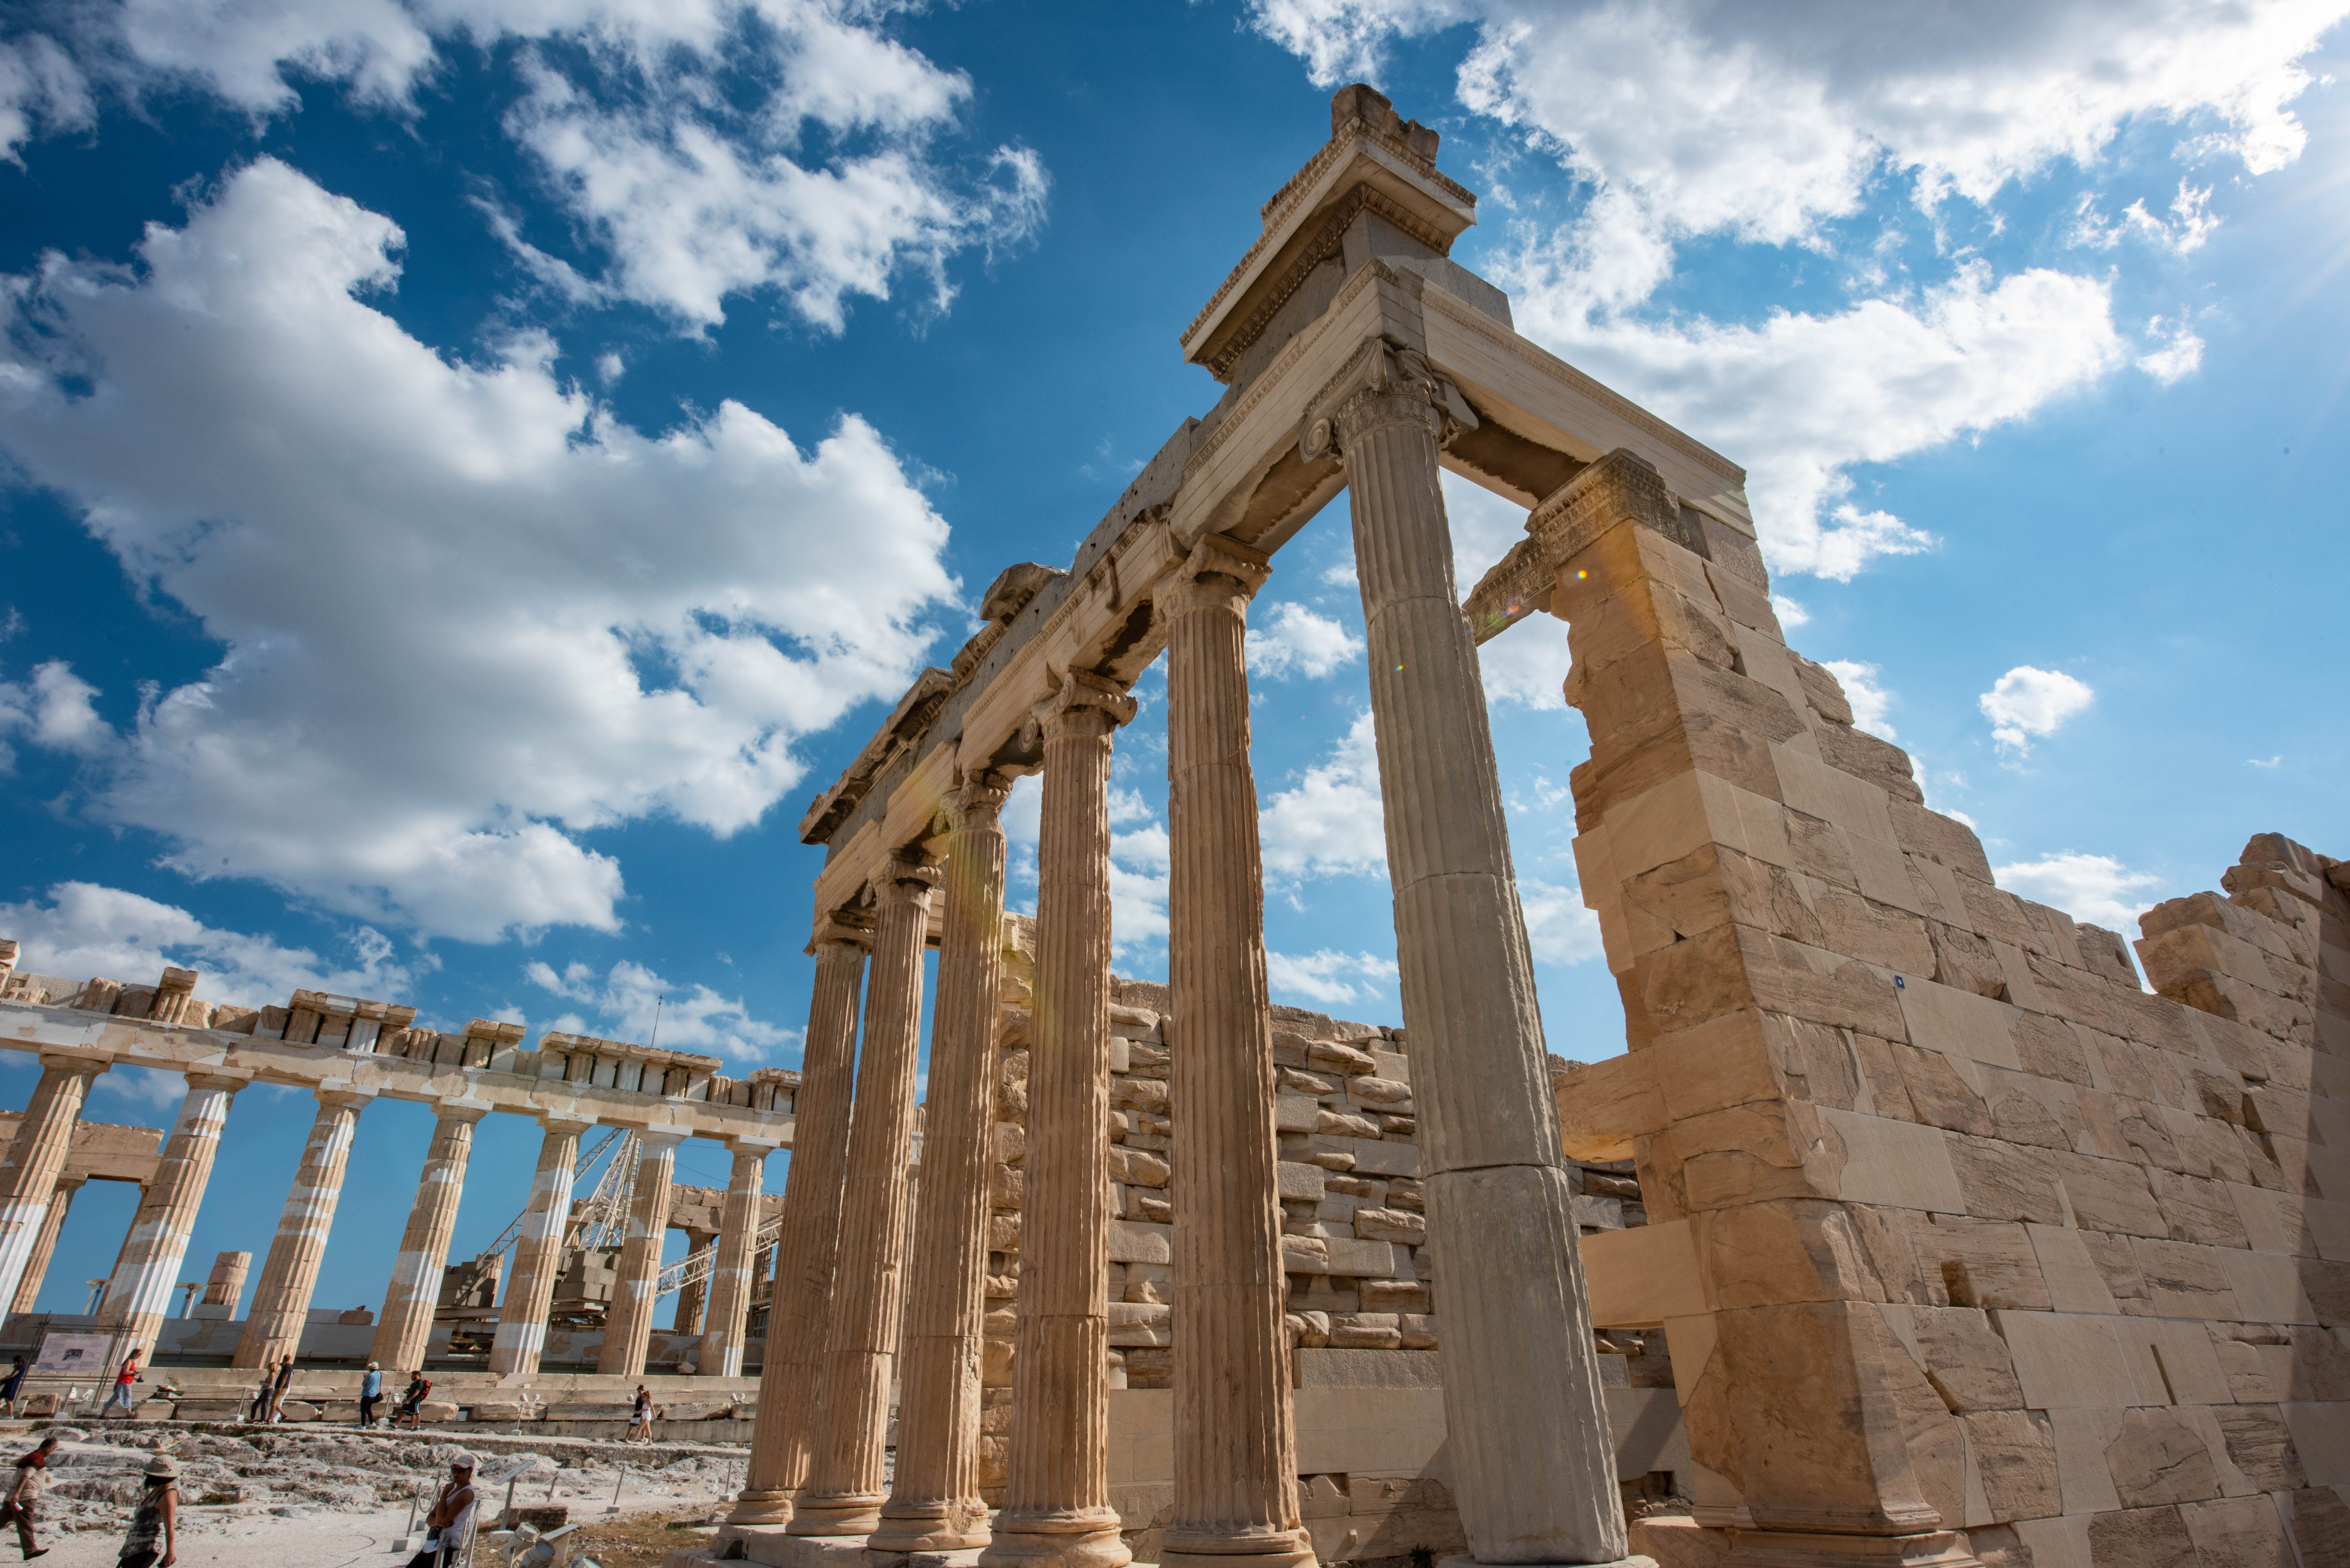 闻名世界的古迹雅典卫城,难道是个惊天谎言?